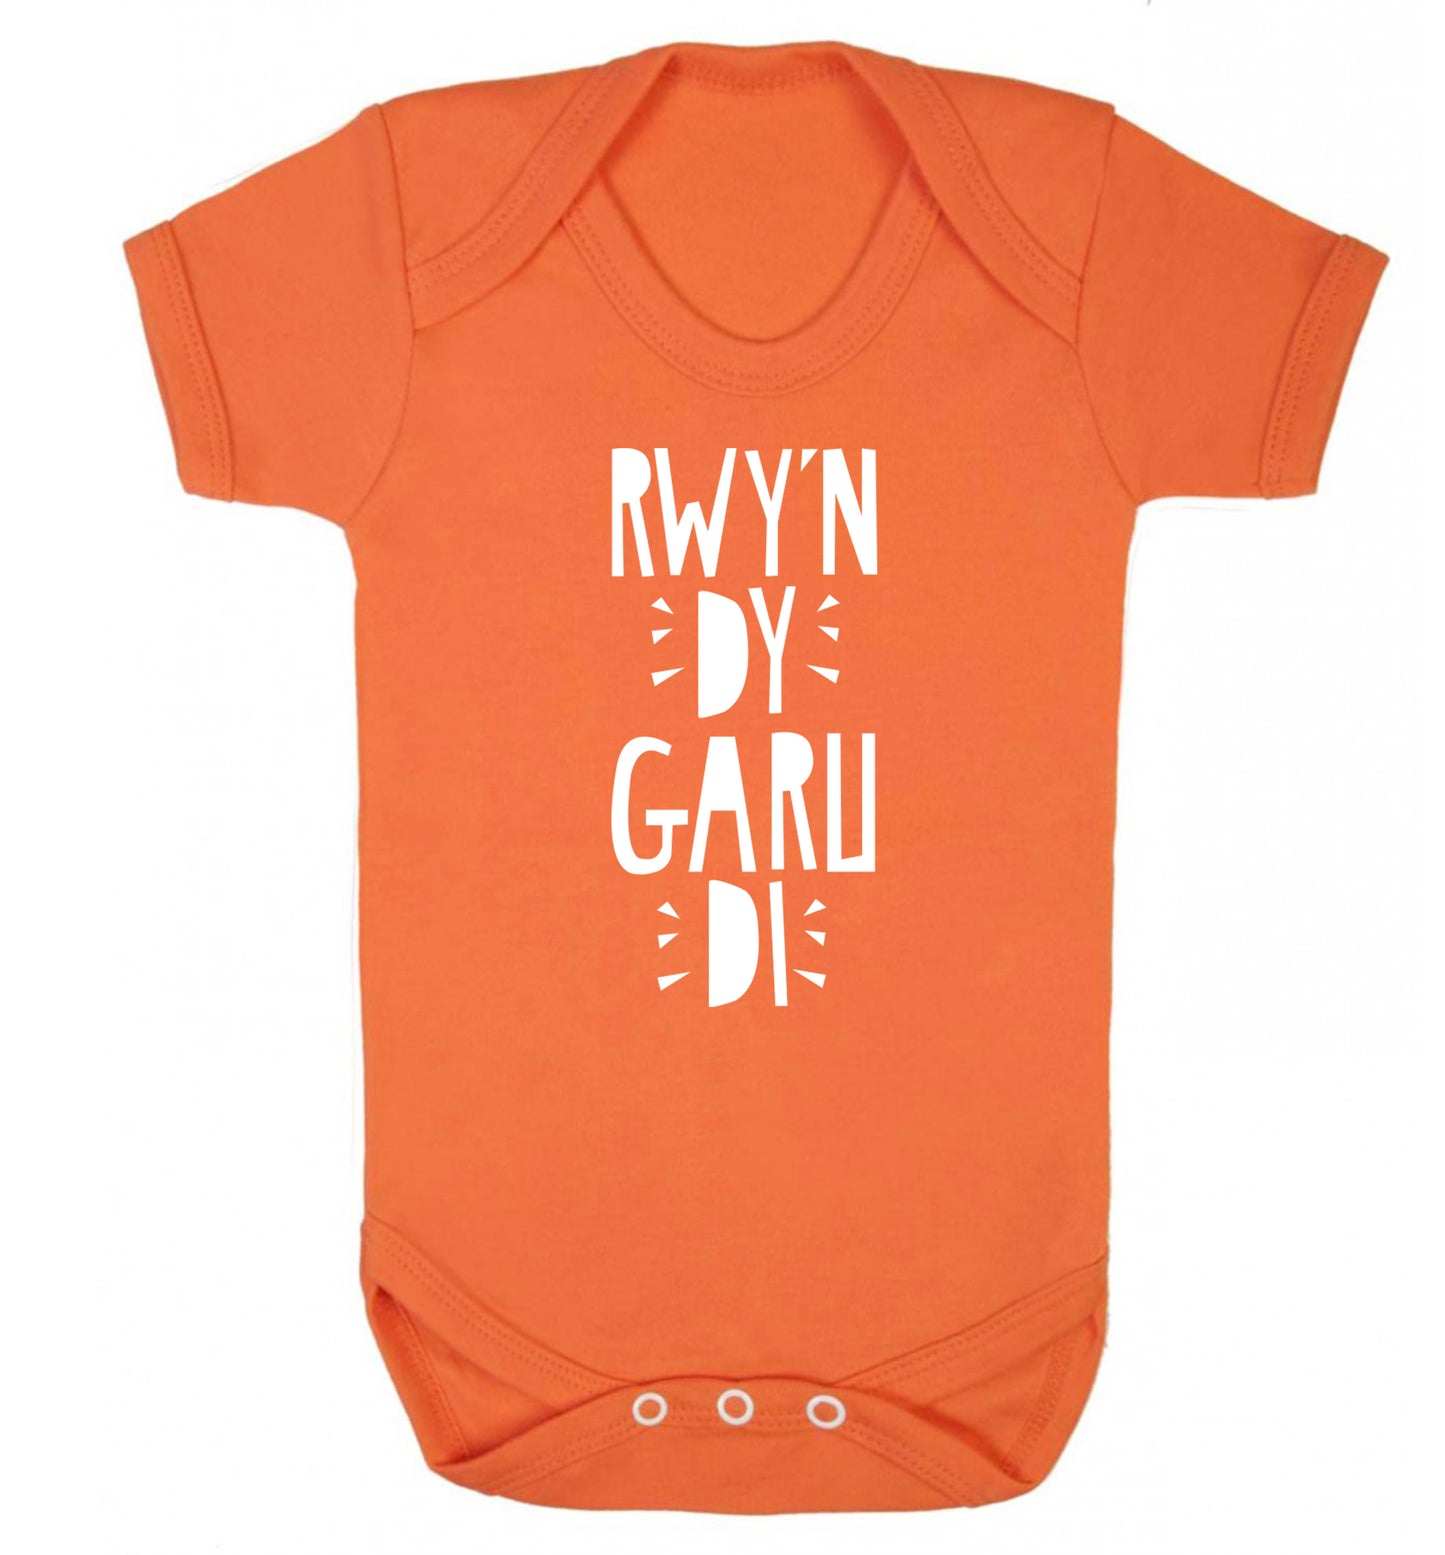 Rwy'n dy garu di - I love you Baby Vest orange 18-24 months